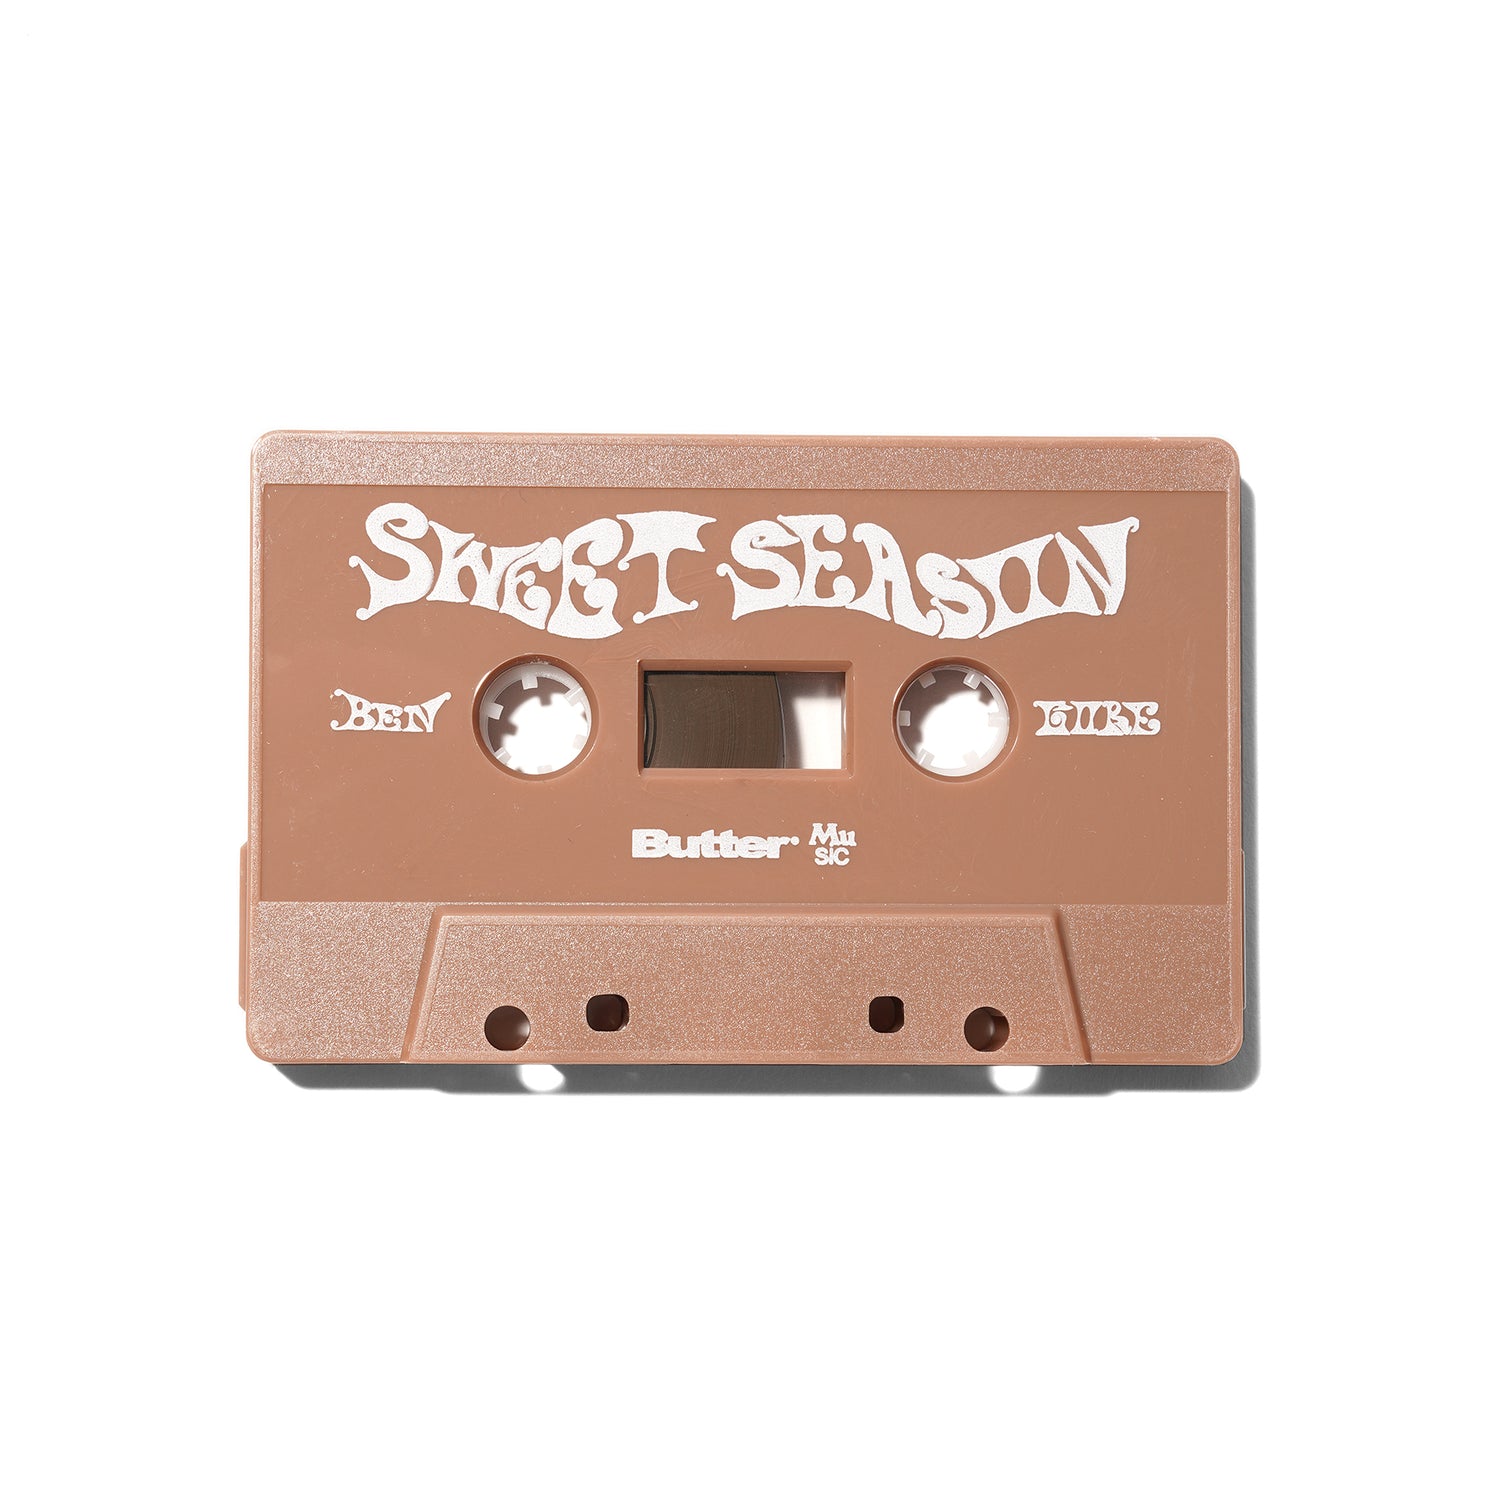 Ben Gore 'Sweet Season' Cassette Tape